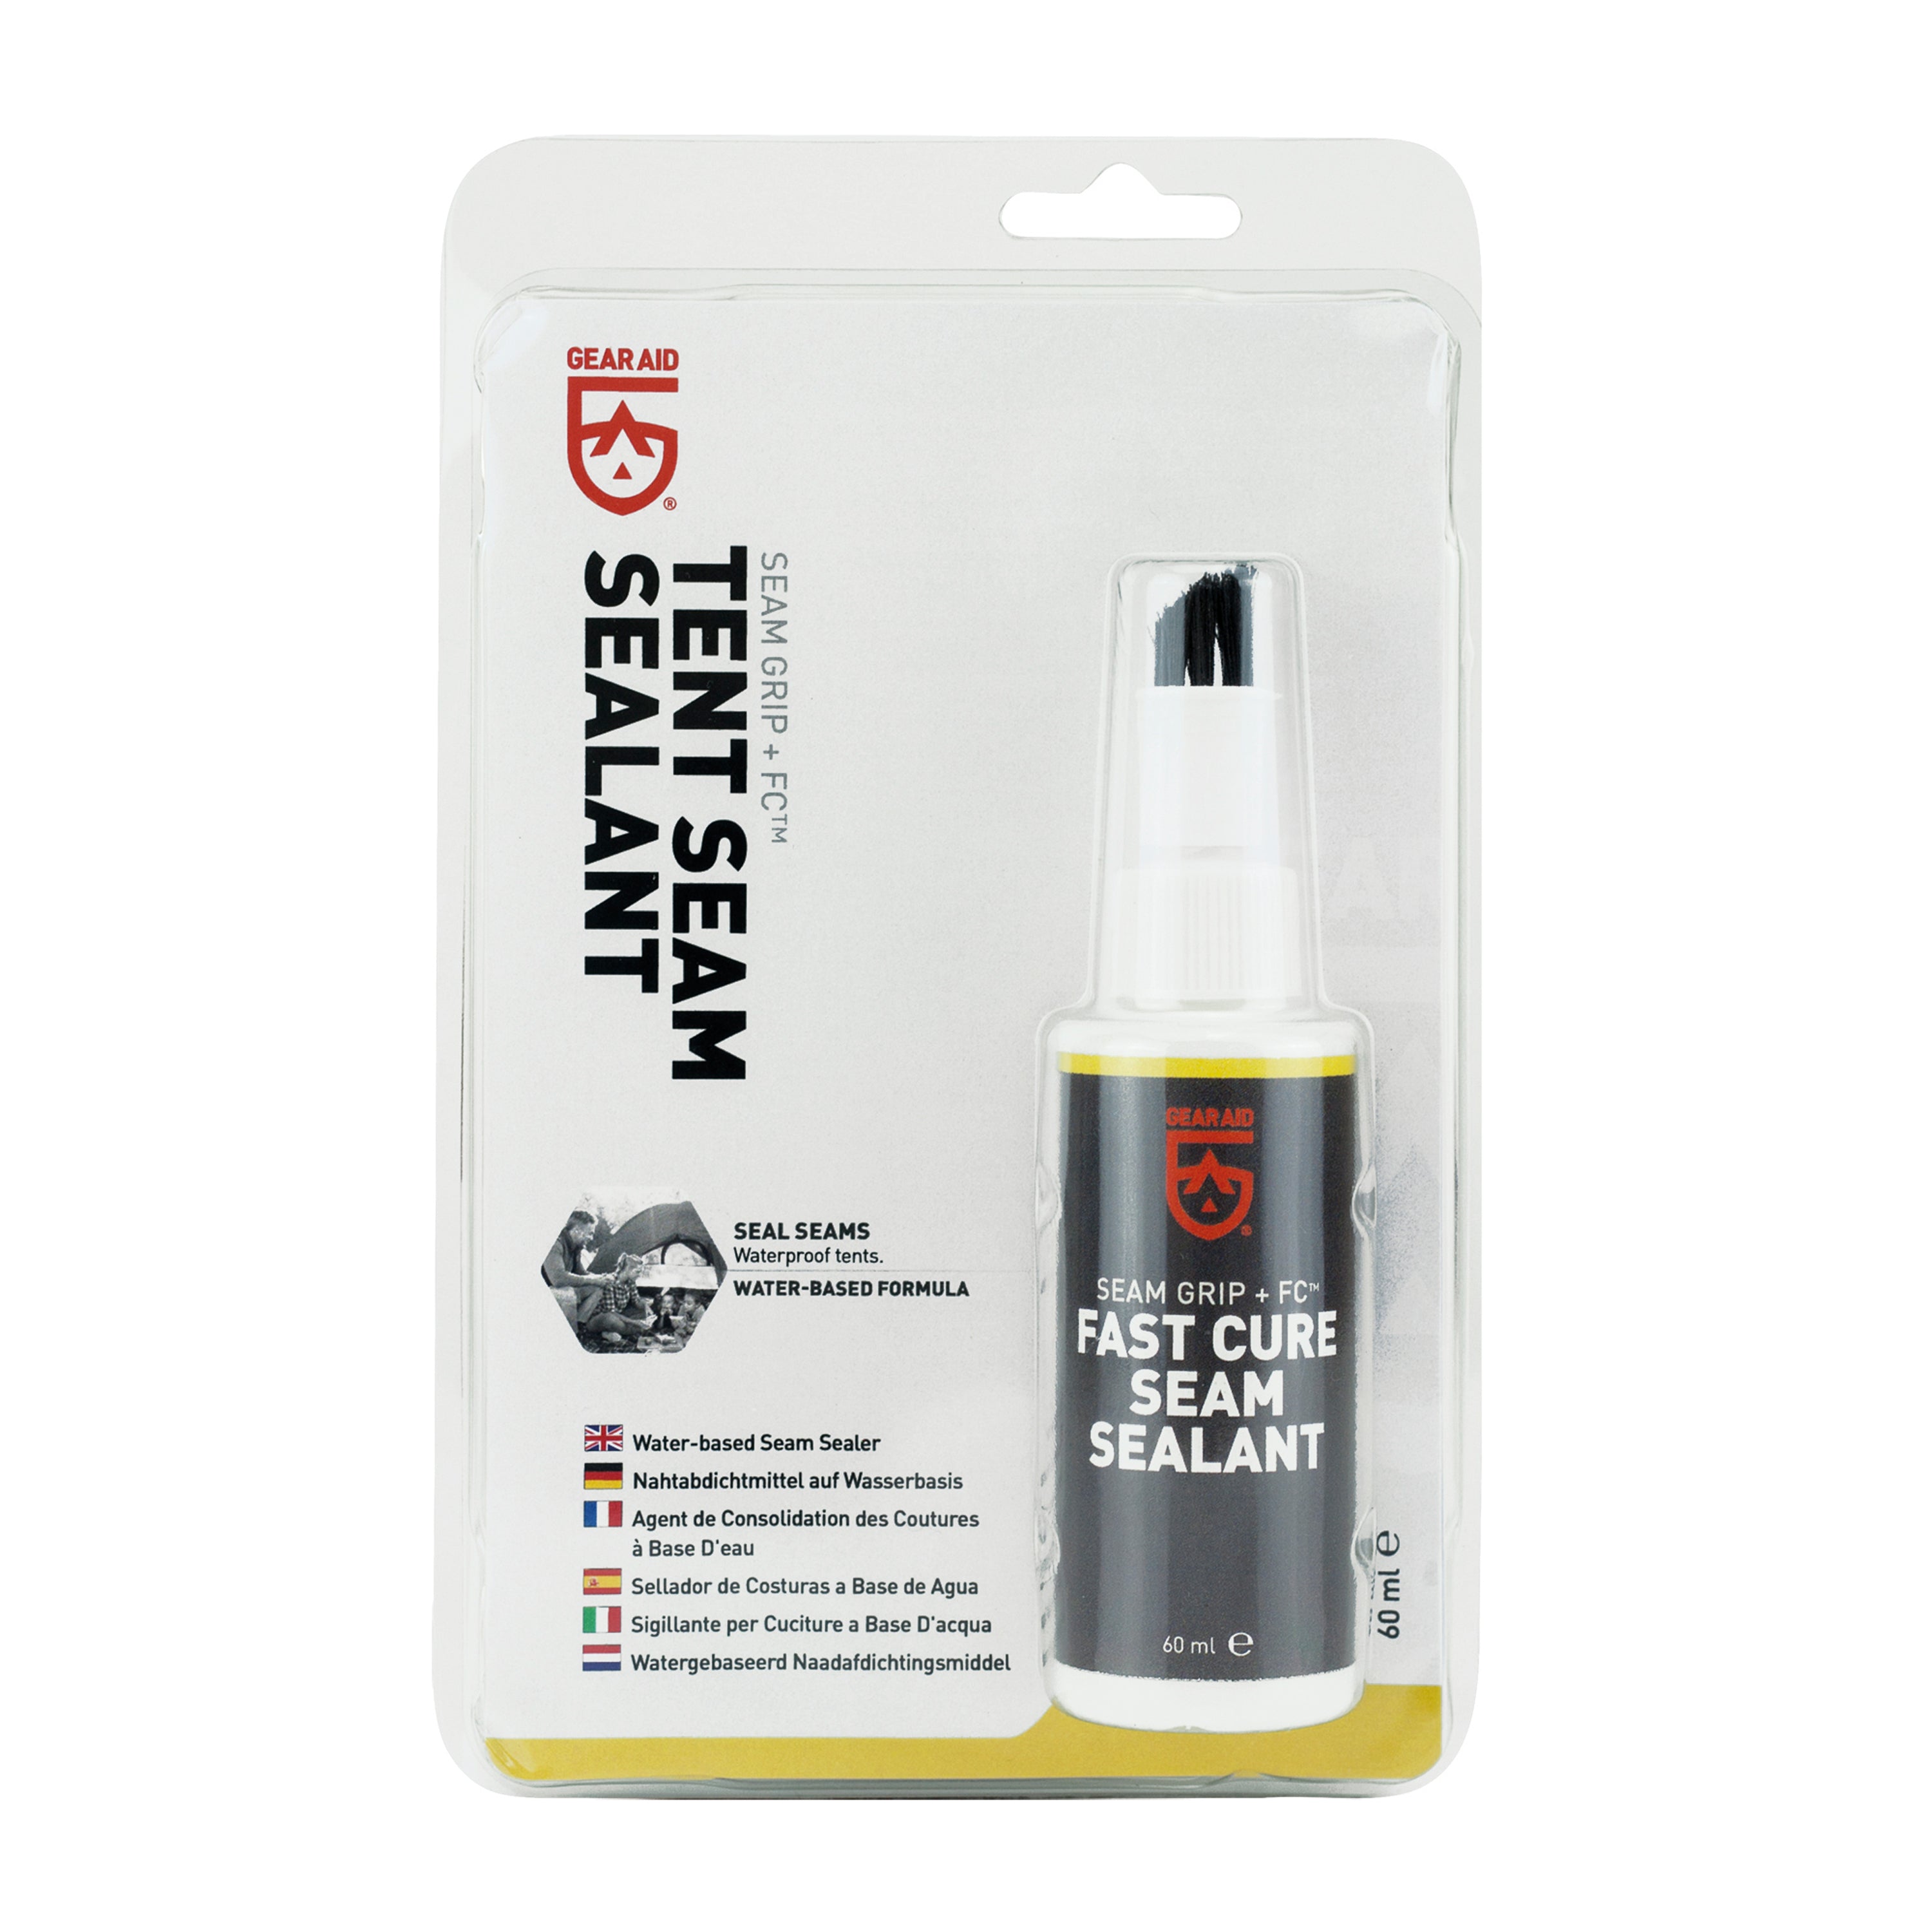 Seam Grip FC Fast Cure Seam Sealant by Gear Aid